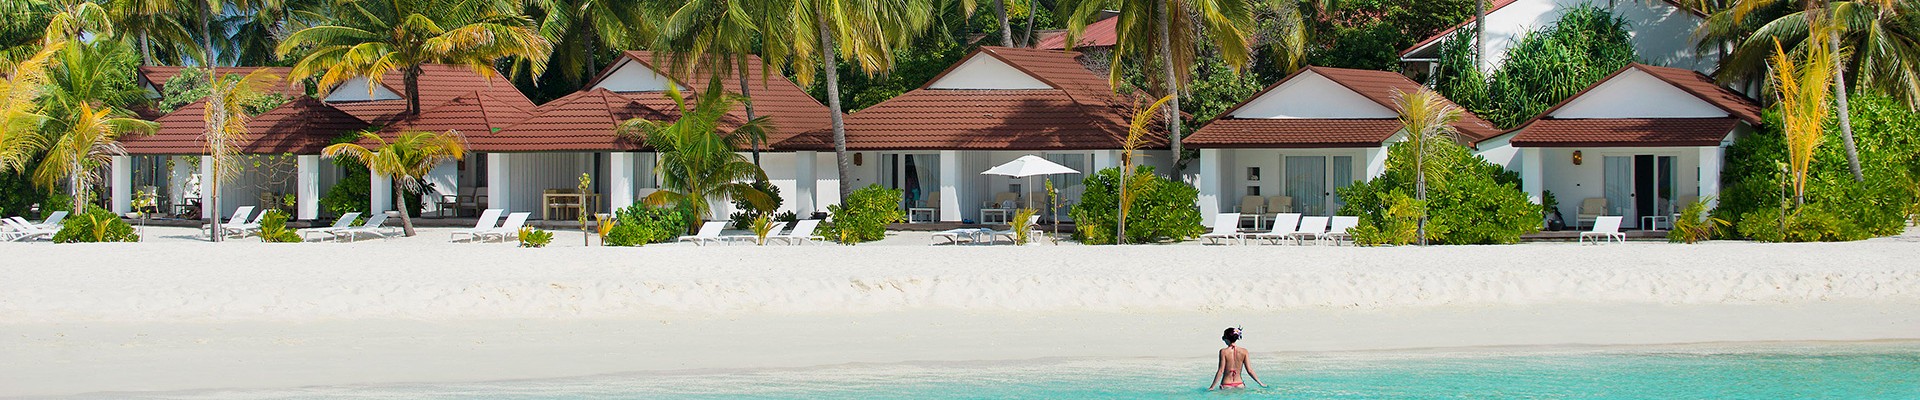 5* Diamonds Thudufushi - Maldives Package (7 nights)